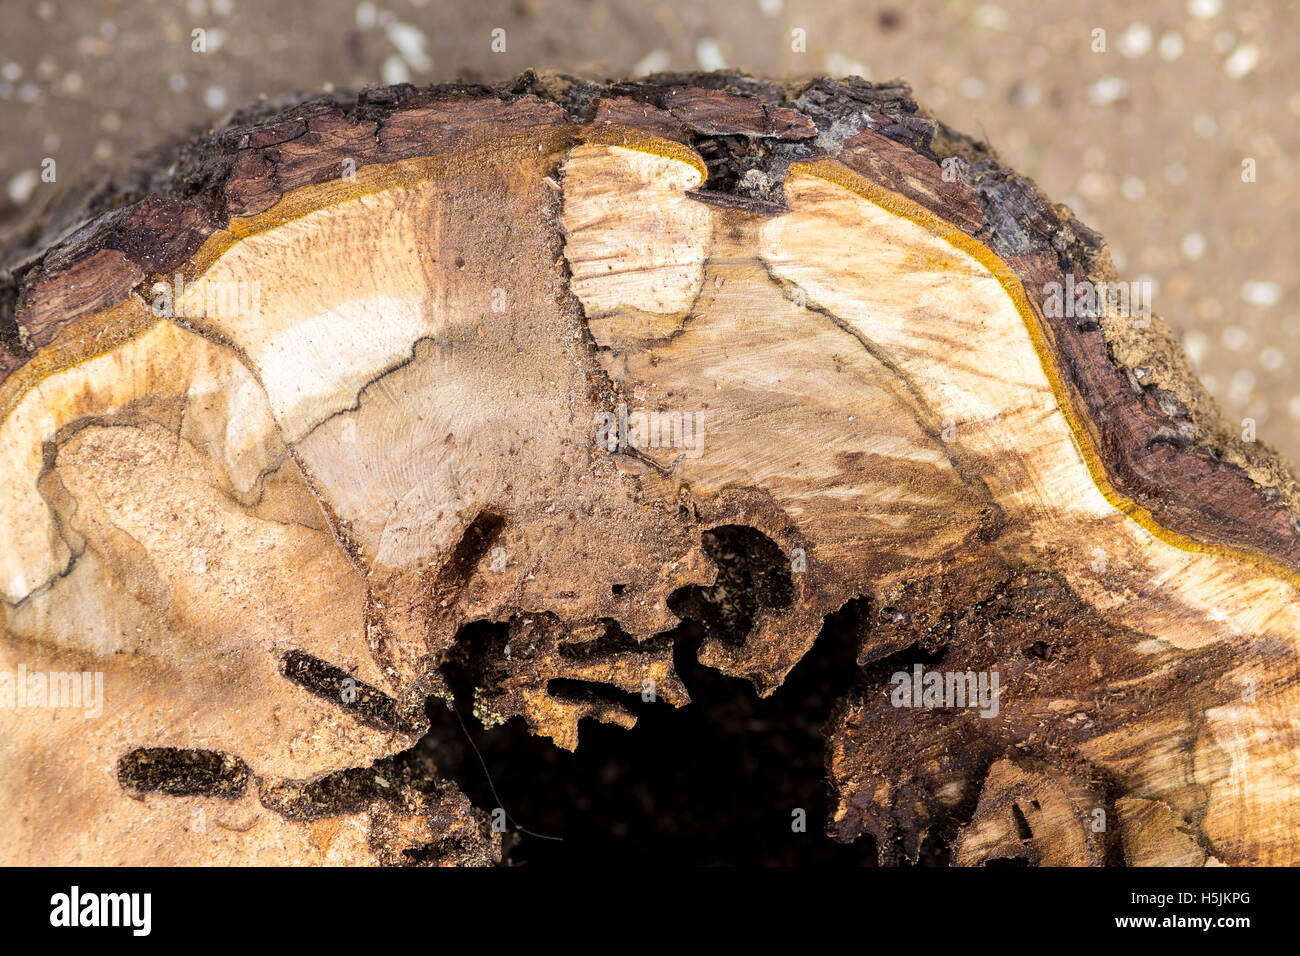 Querschnitt eines Baumes Details von Insekten gegessen Stockfoto